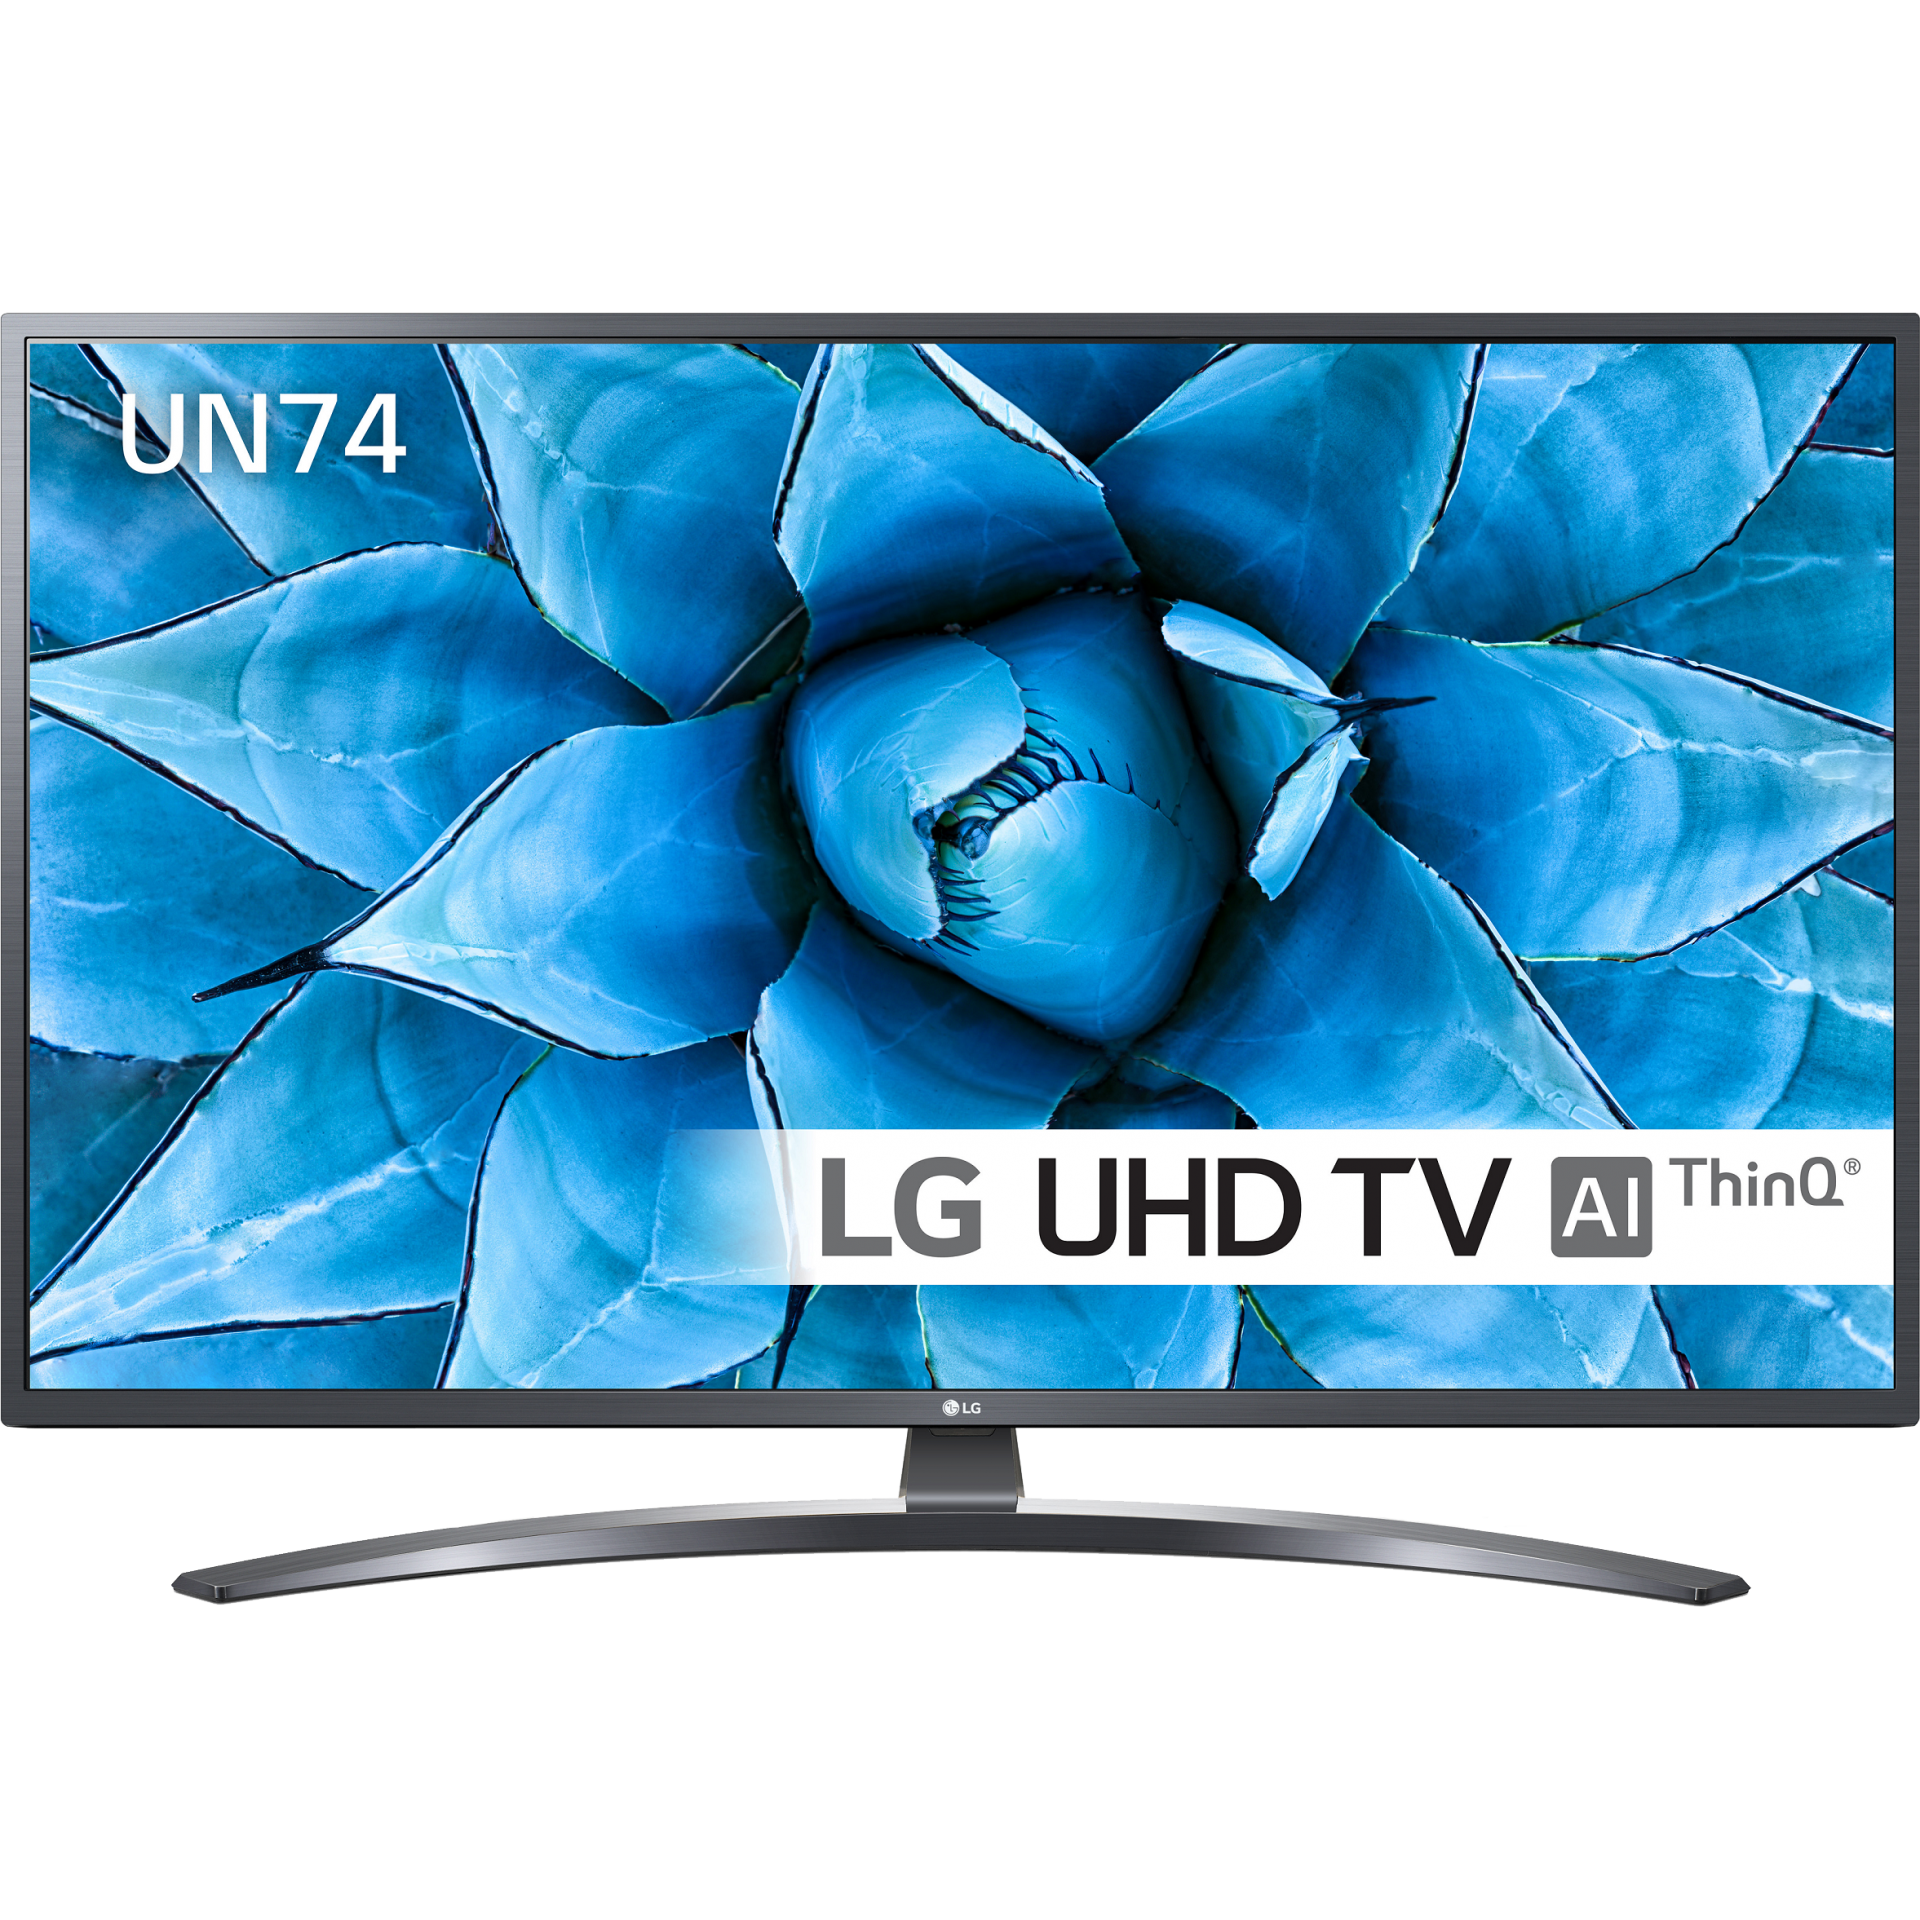 Lg 55un74003lb Uhd Smart Led Tv Auchan Online